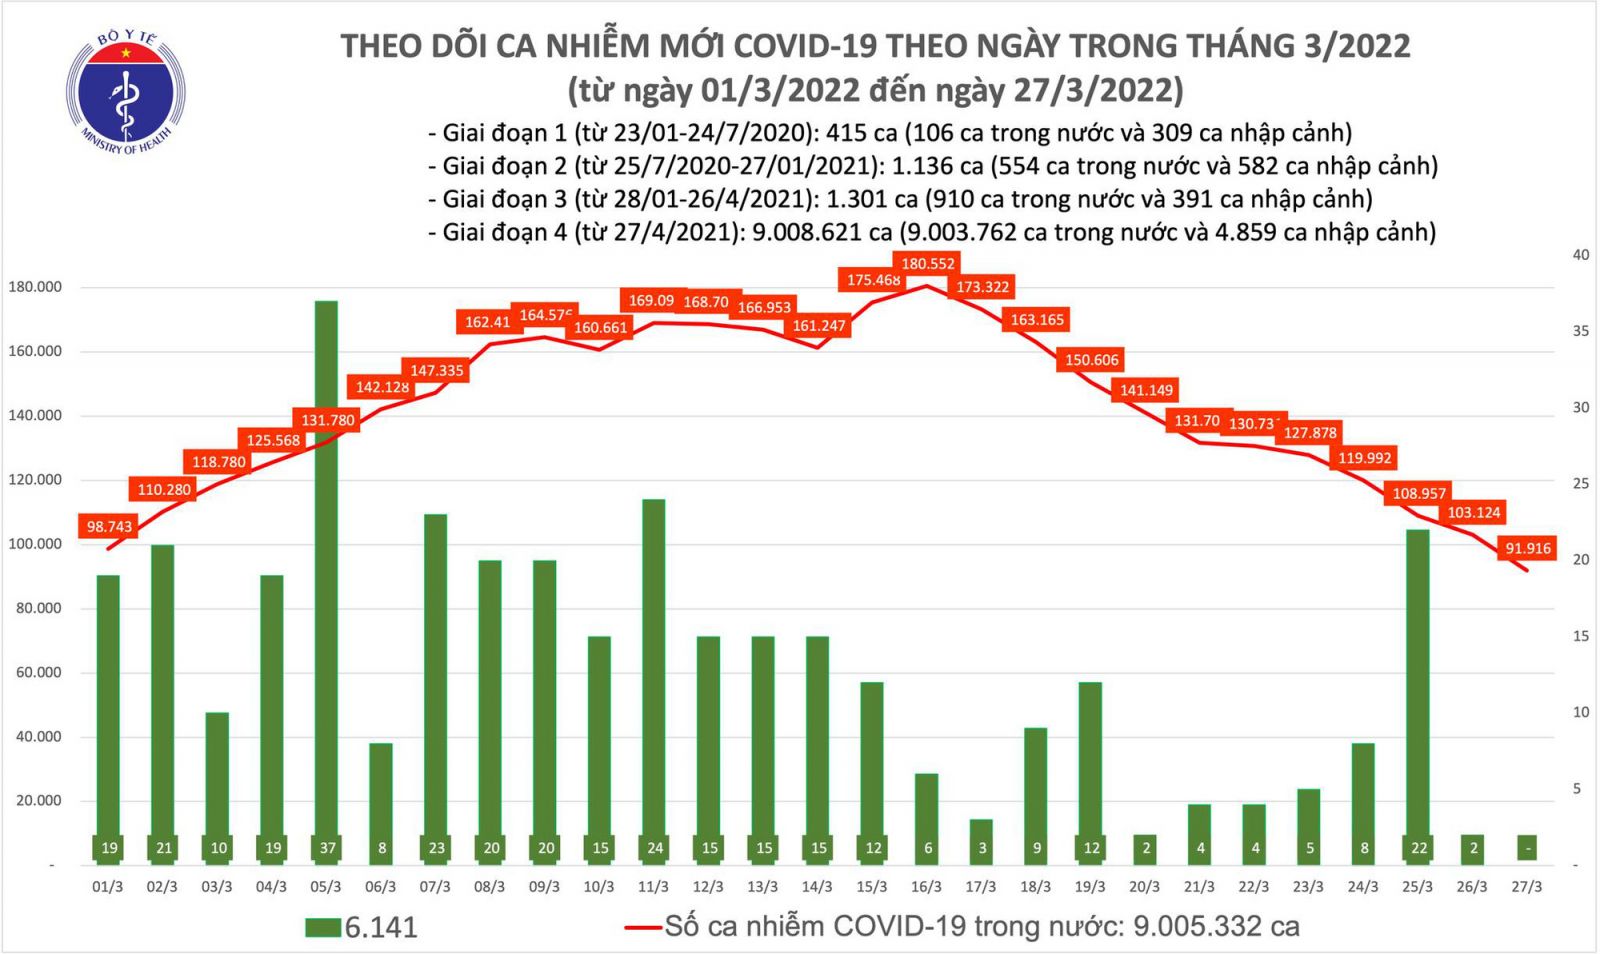 Ngày 27/3: Số mắc mới COVID-19 giảm mạnh còn 91.916 ca, thấp nhất trong khoảng 1 tháng qua